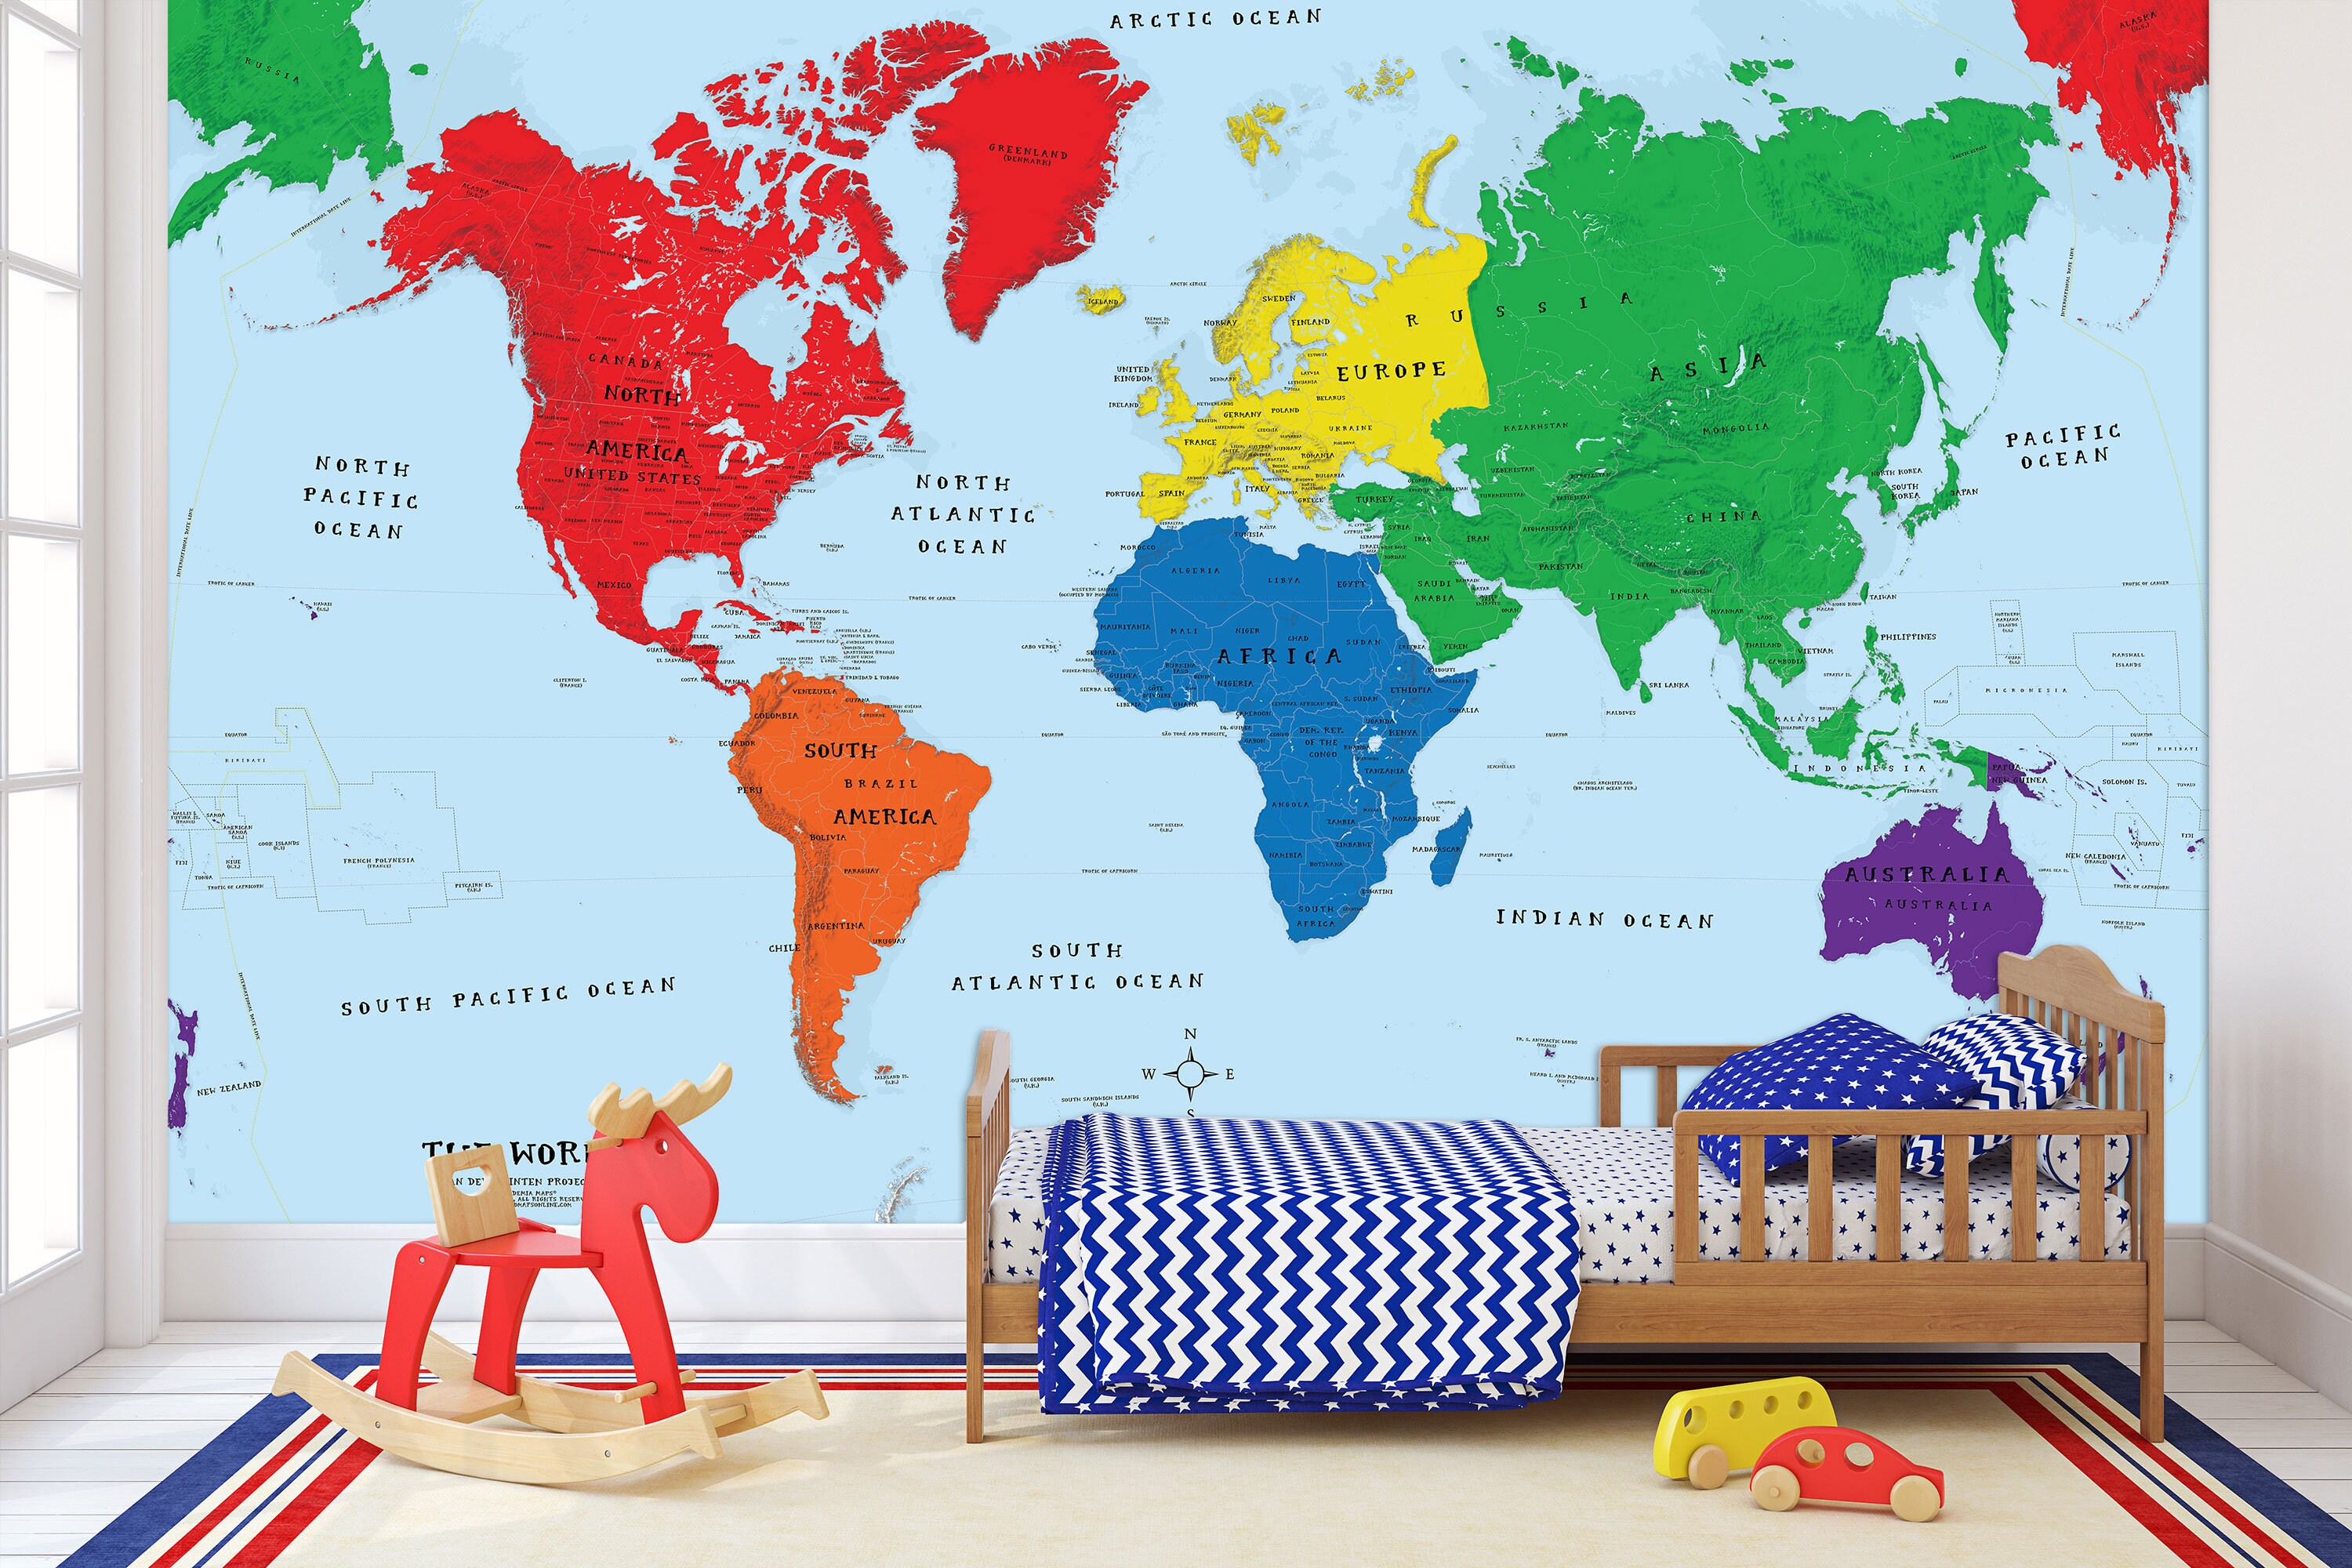 Carte Monde en relief/Physical world map - Atlas - LIVRES -   - Livres + cadeaux + jeux